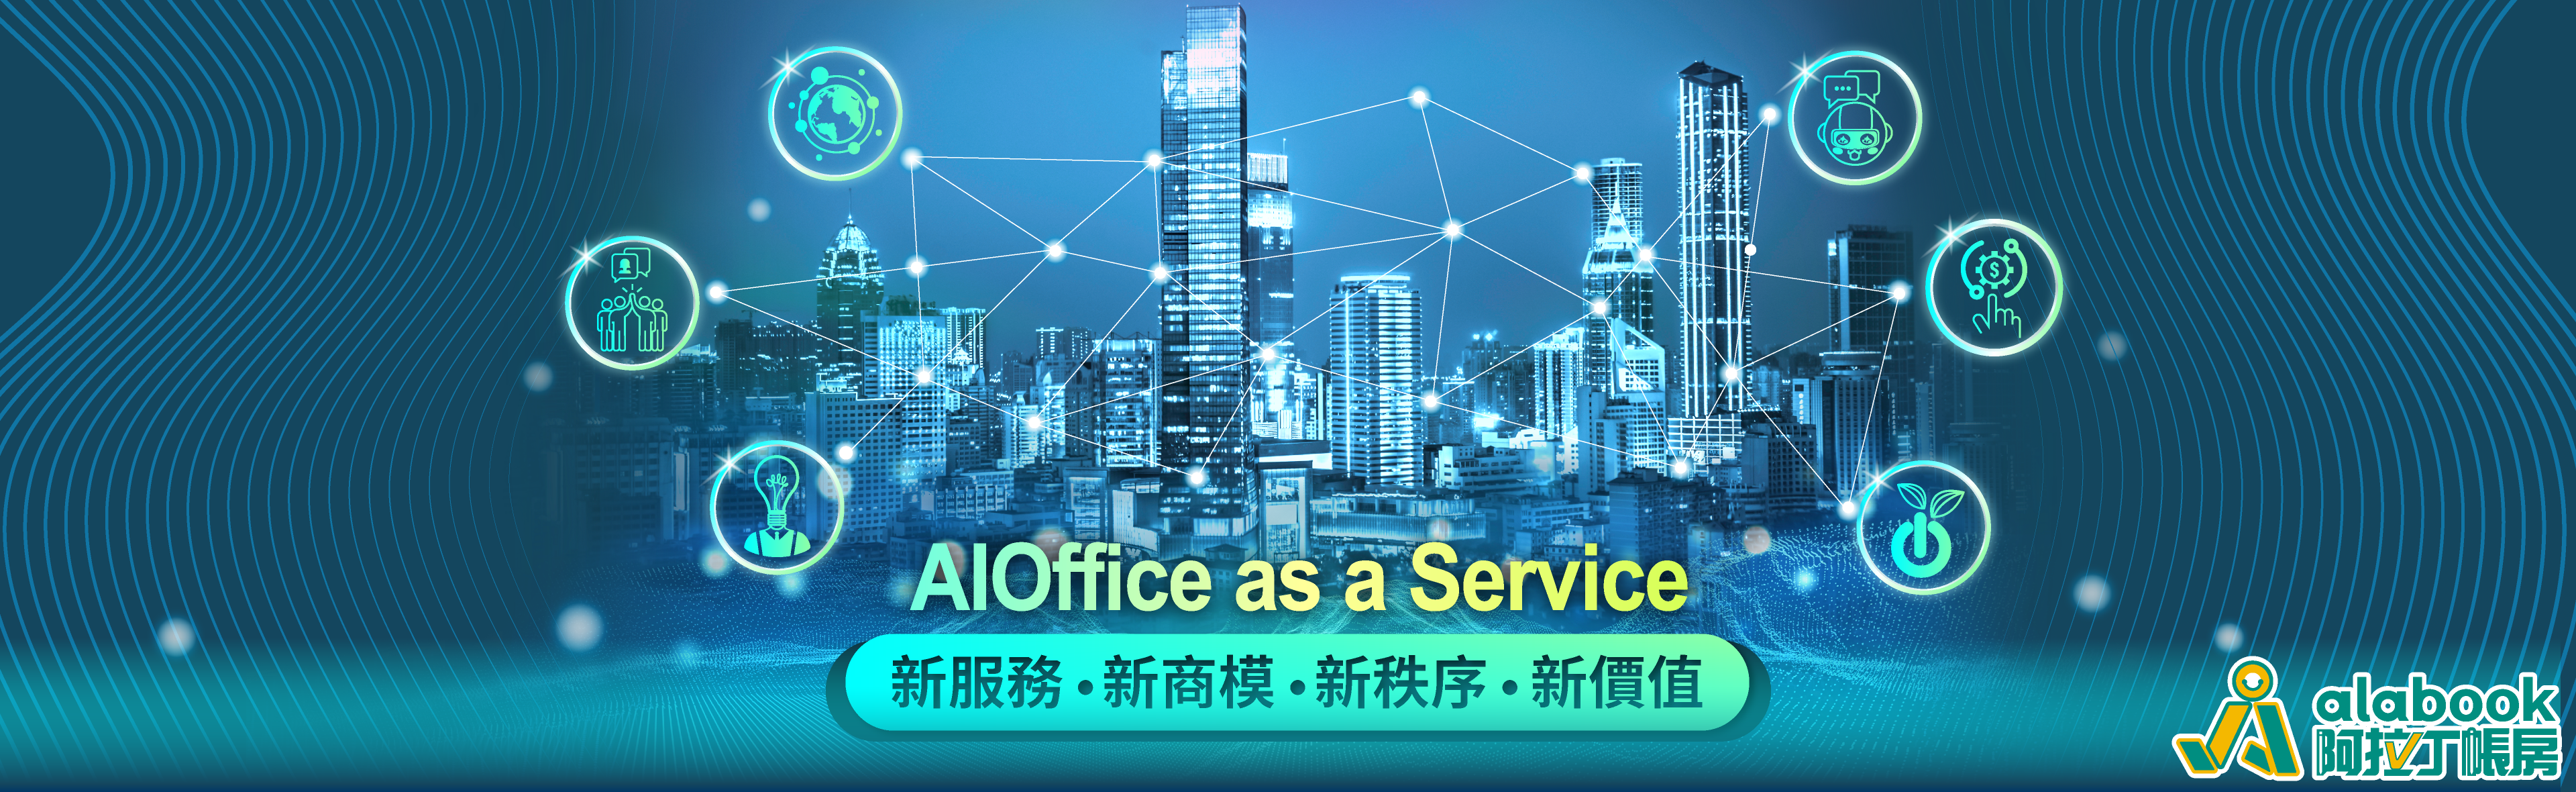 018.AIOffice-as-a-Service-新服務、新商模、新秩序、新價值_阿拉丁2